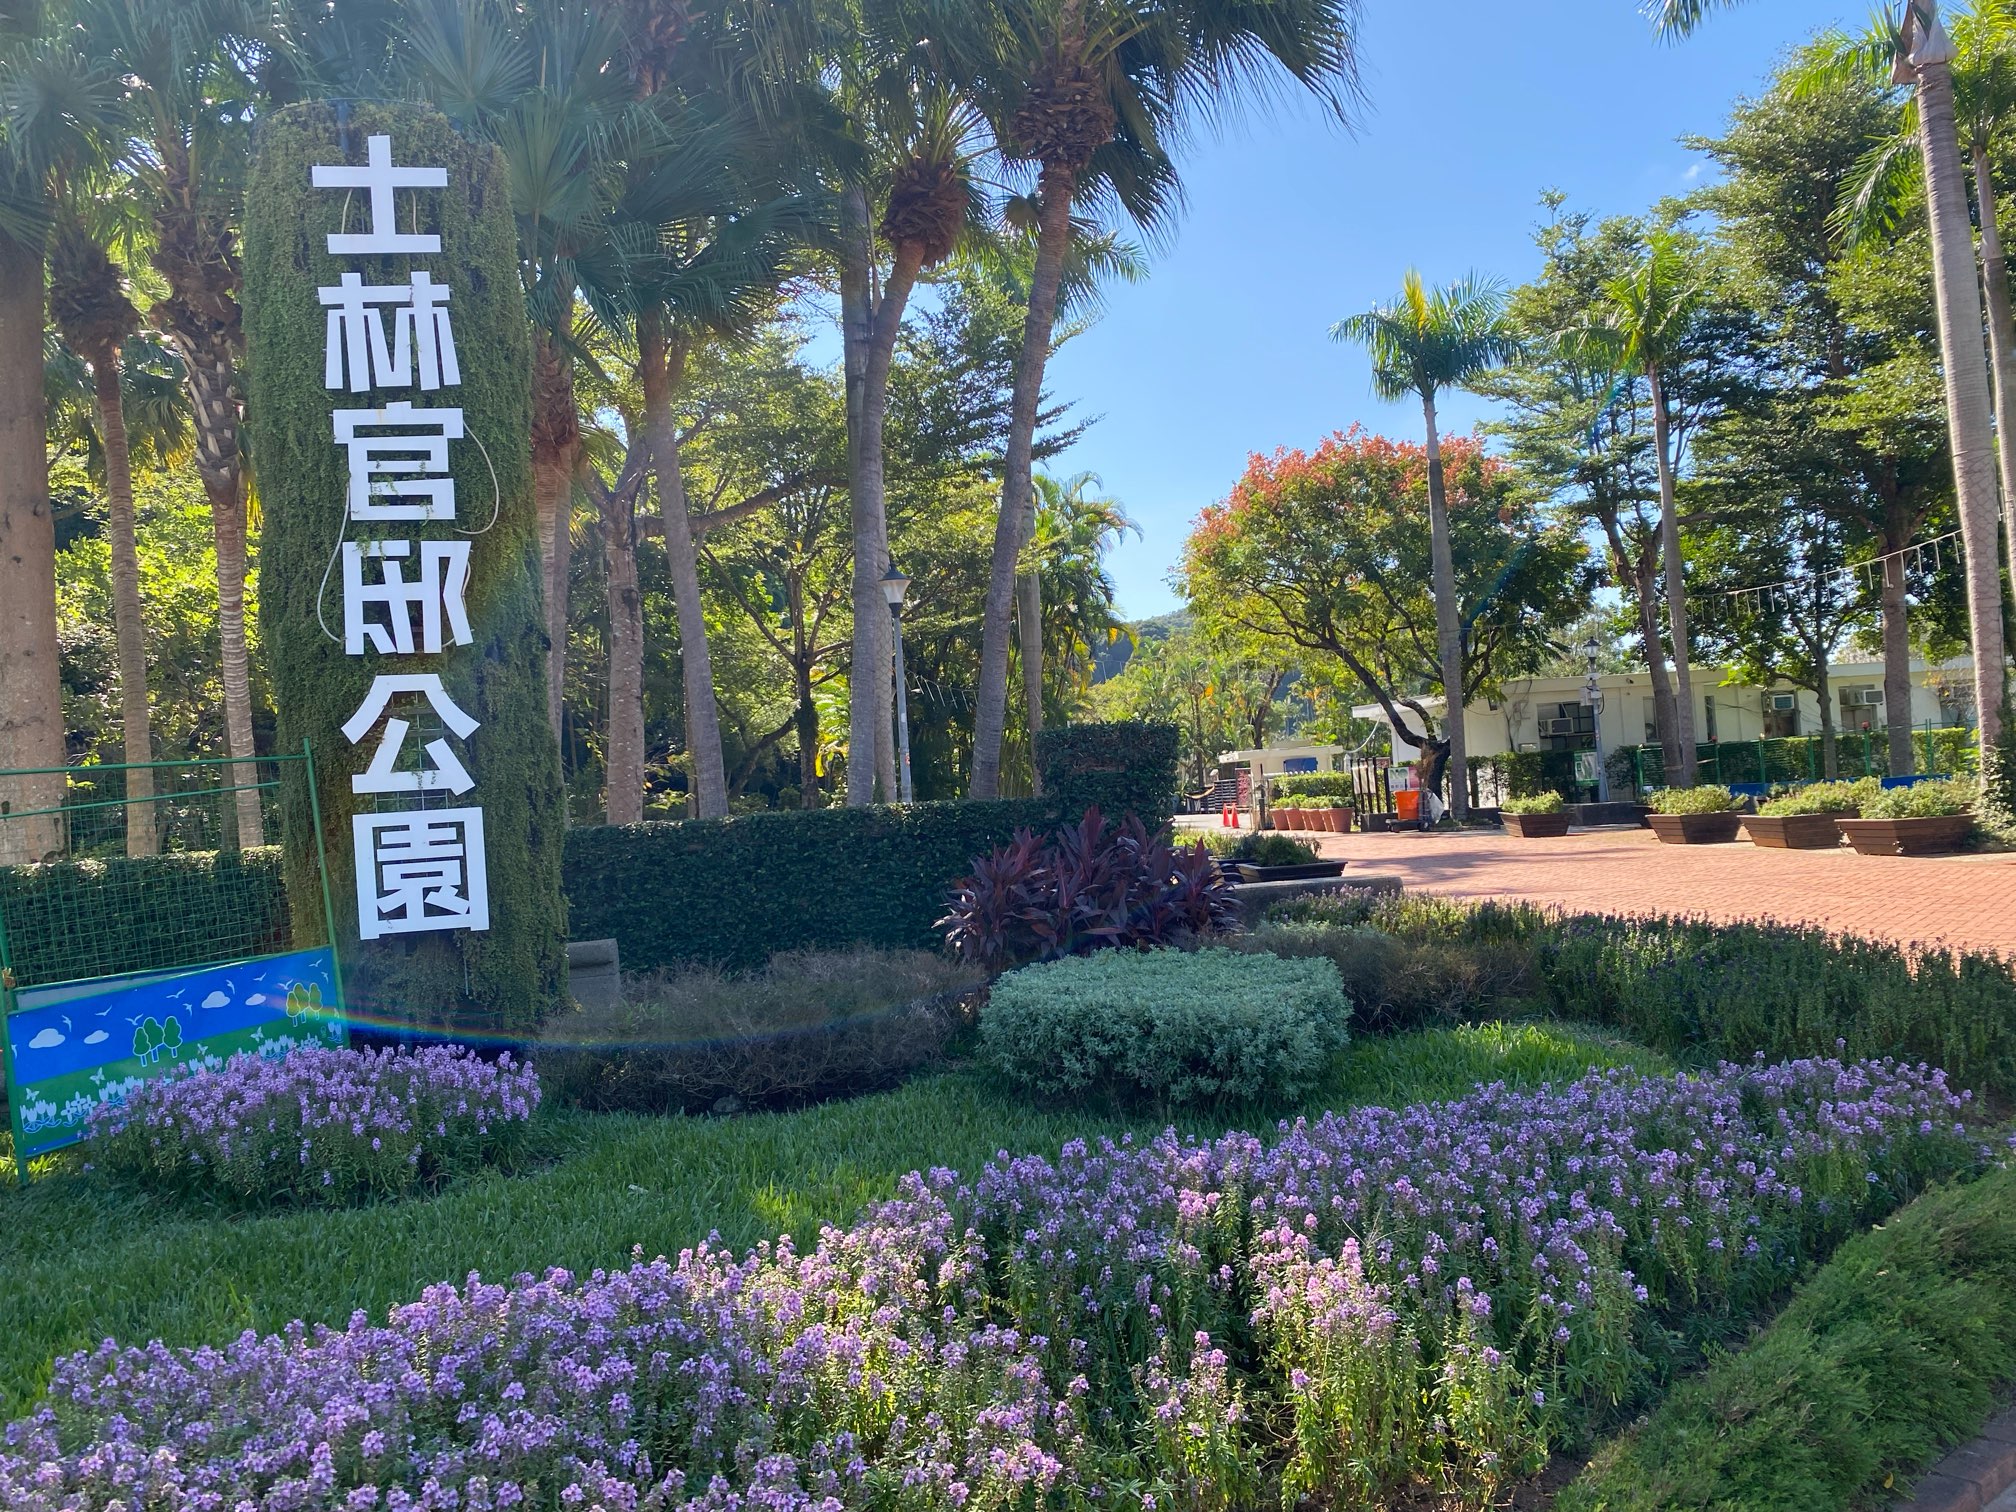 無料やのに良いやん！台北で観光お散歩に便利な「士林官邸公園・Shilin Residence Park」